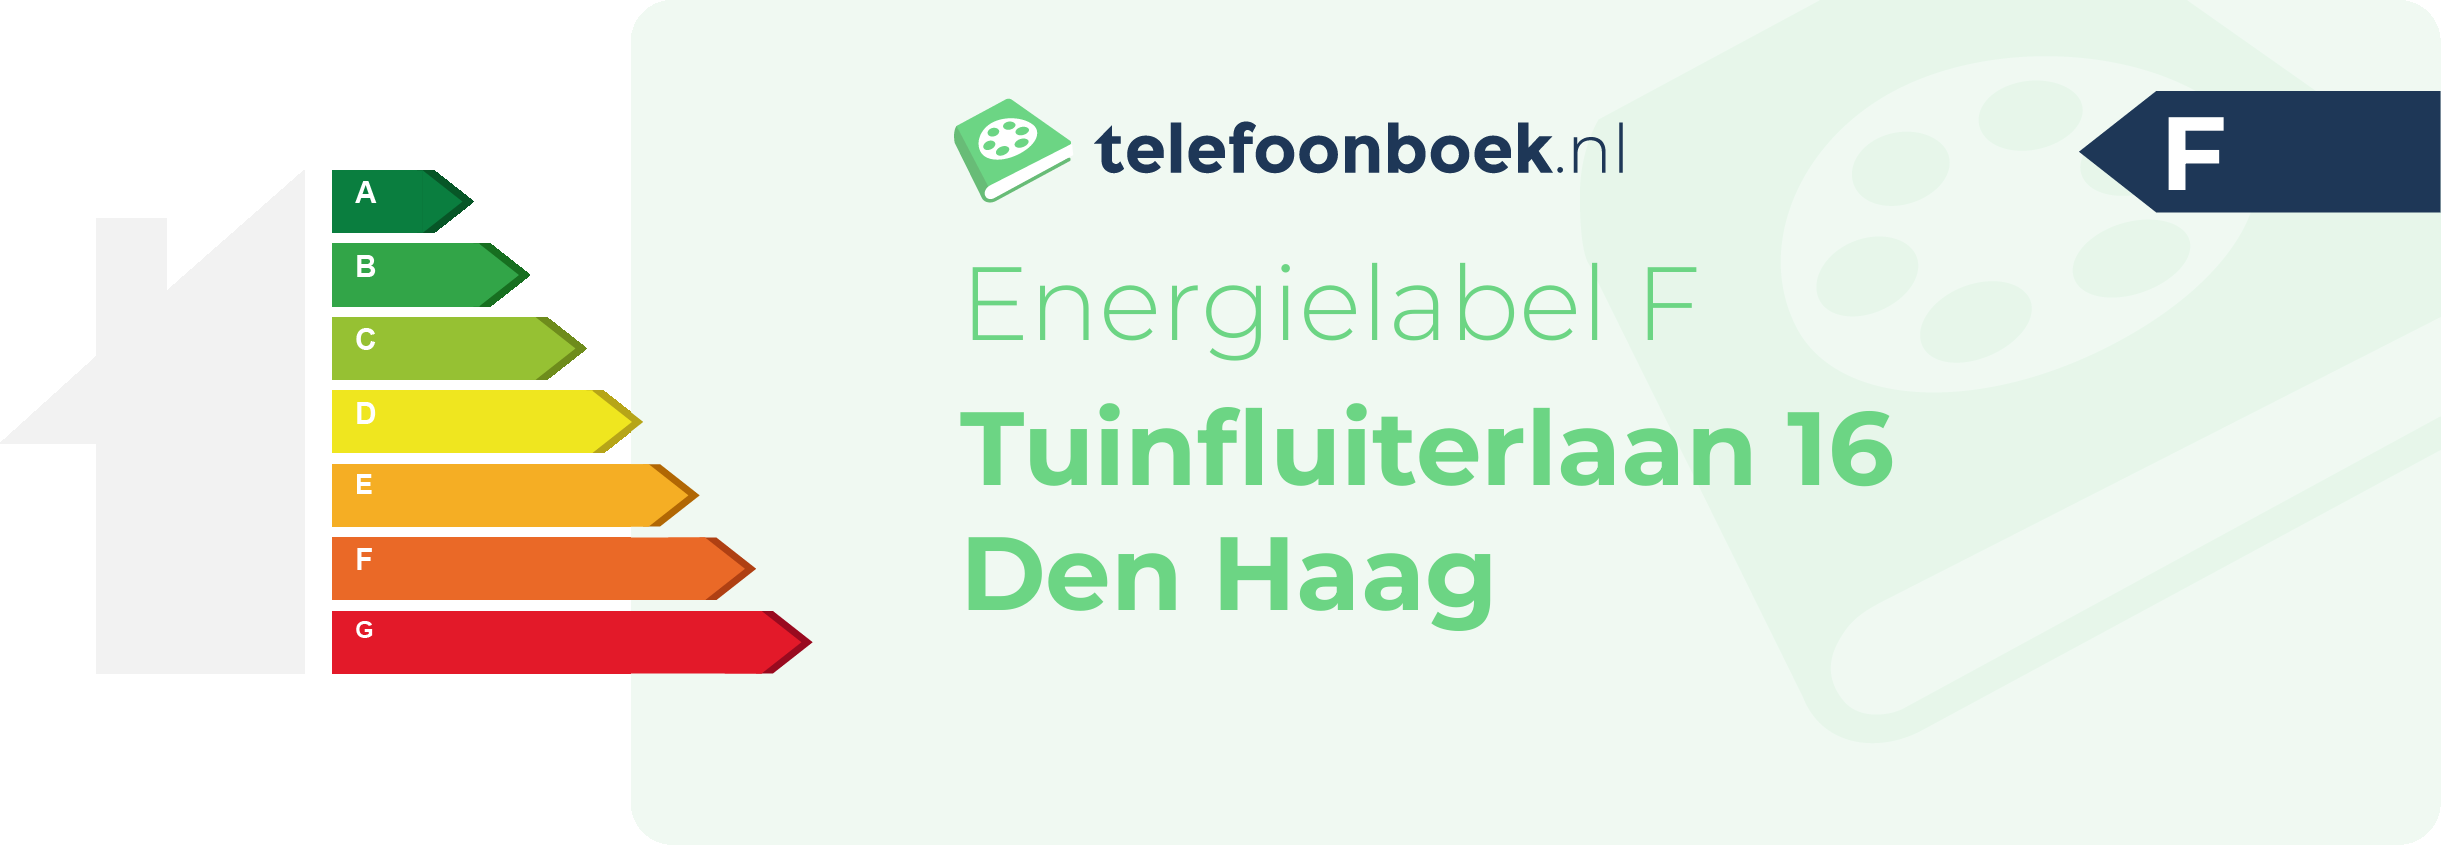 Energielabel Tuinfluiterlaan 16 Den Haag